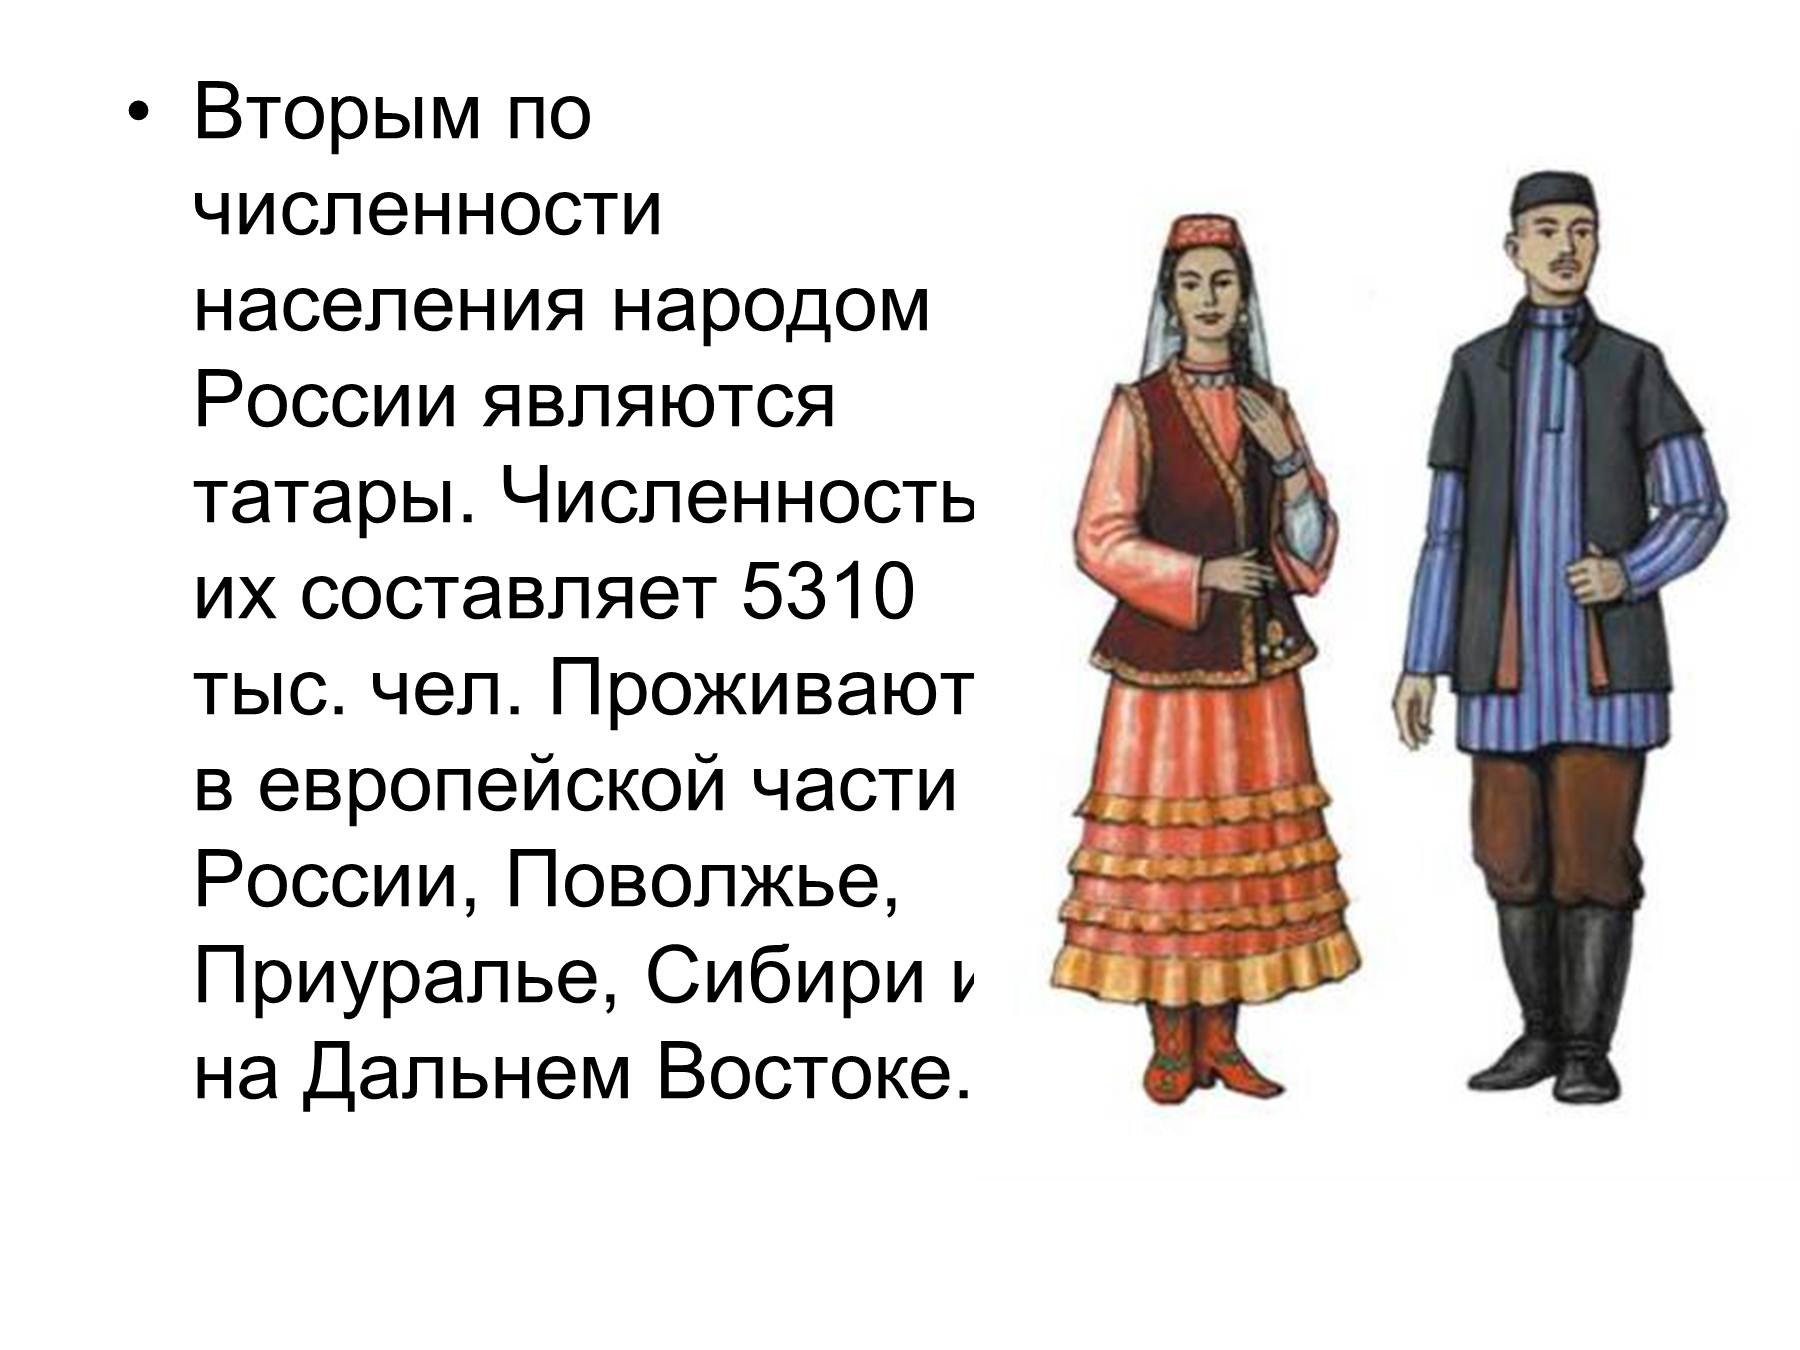 Рассказ о народе России